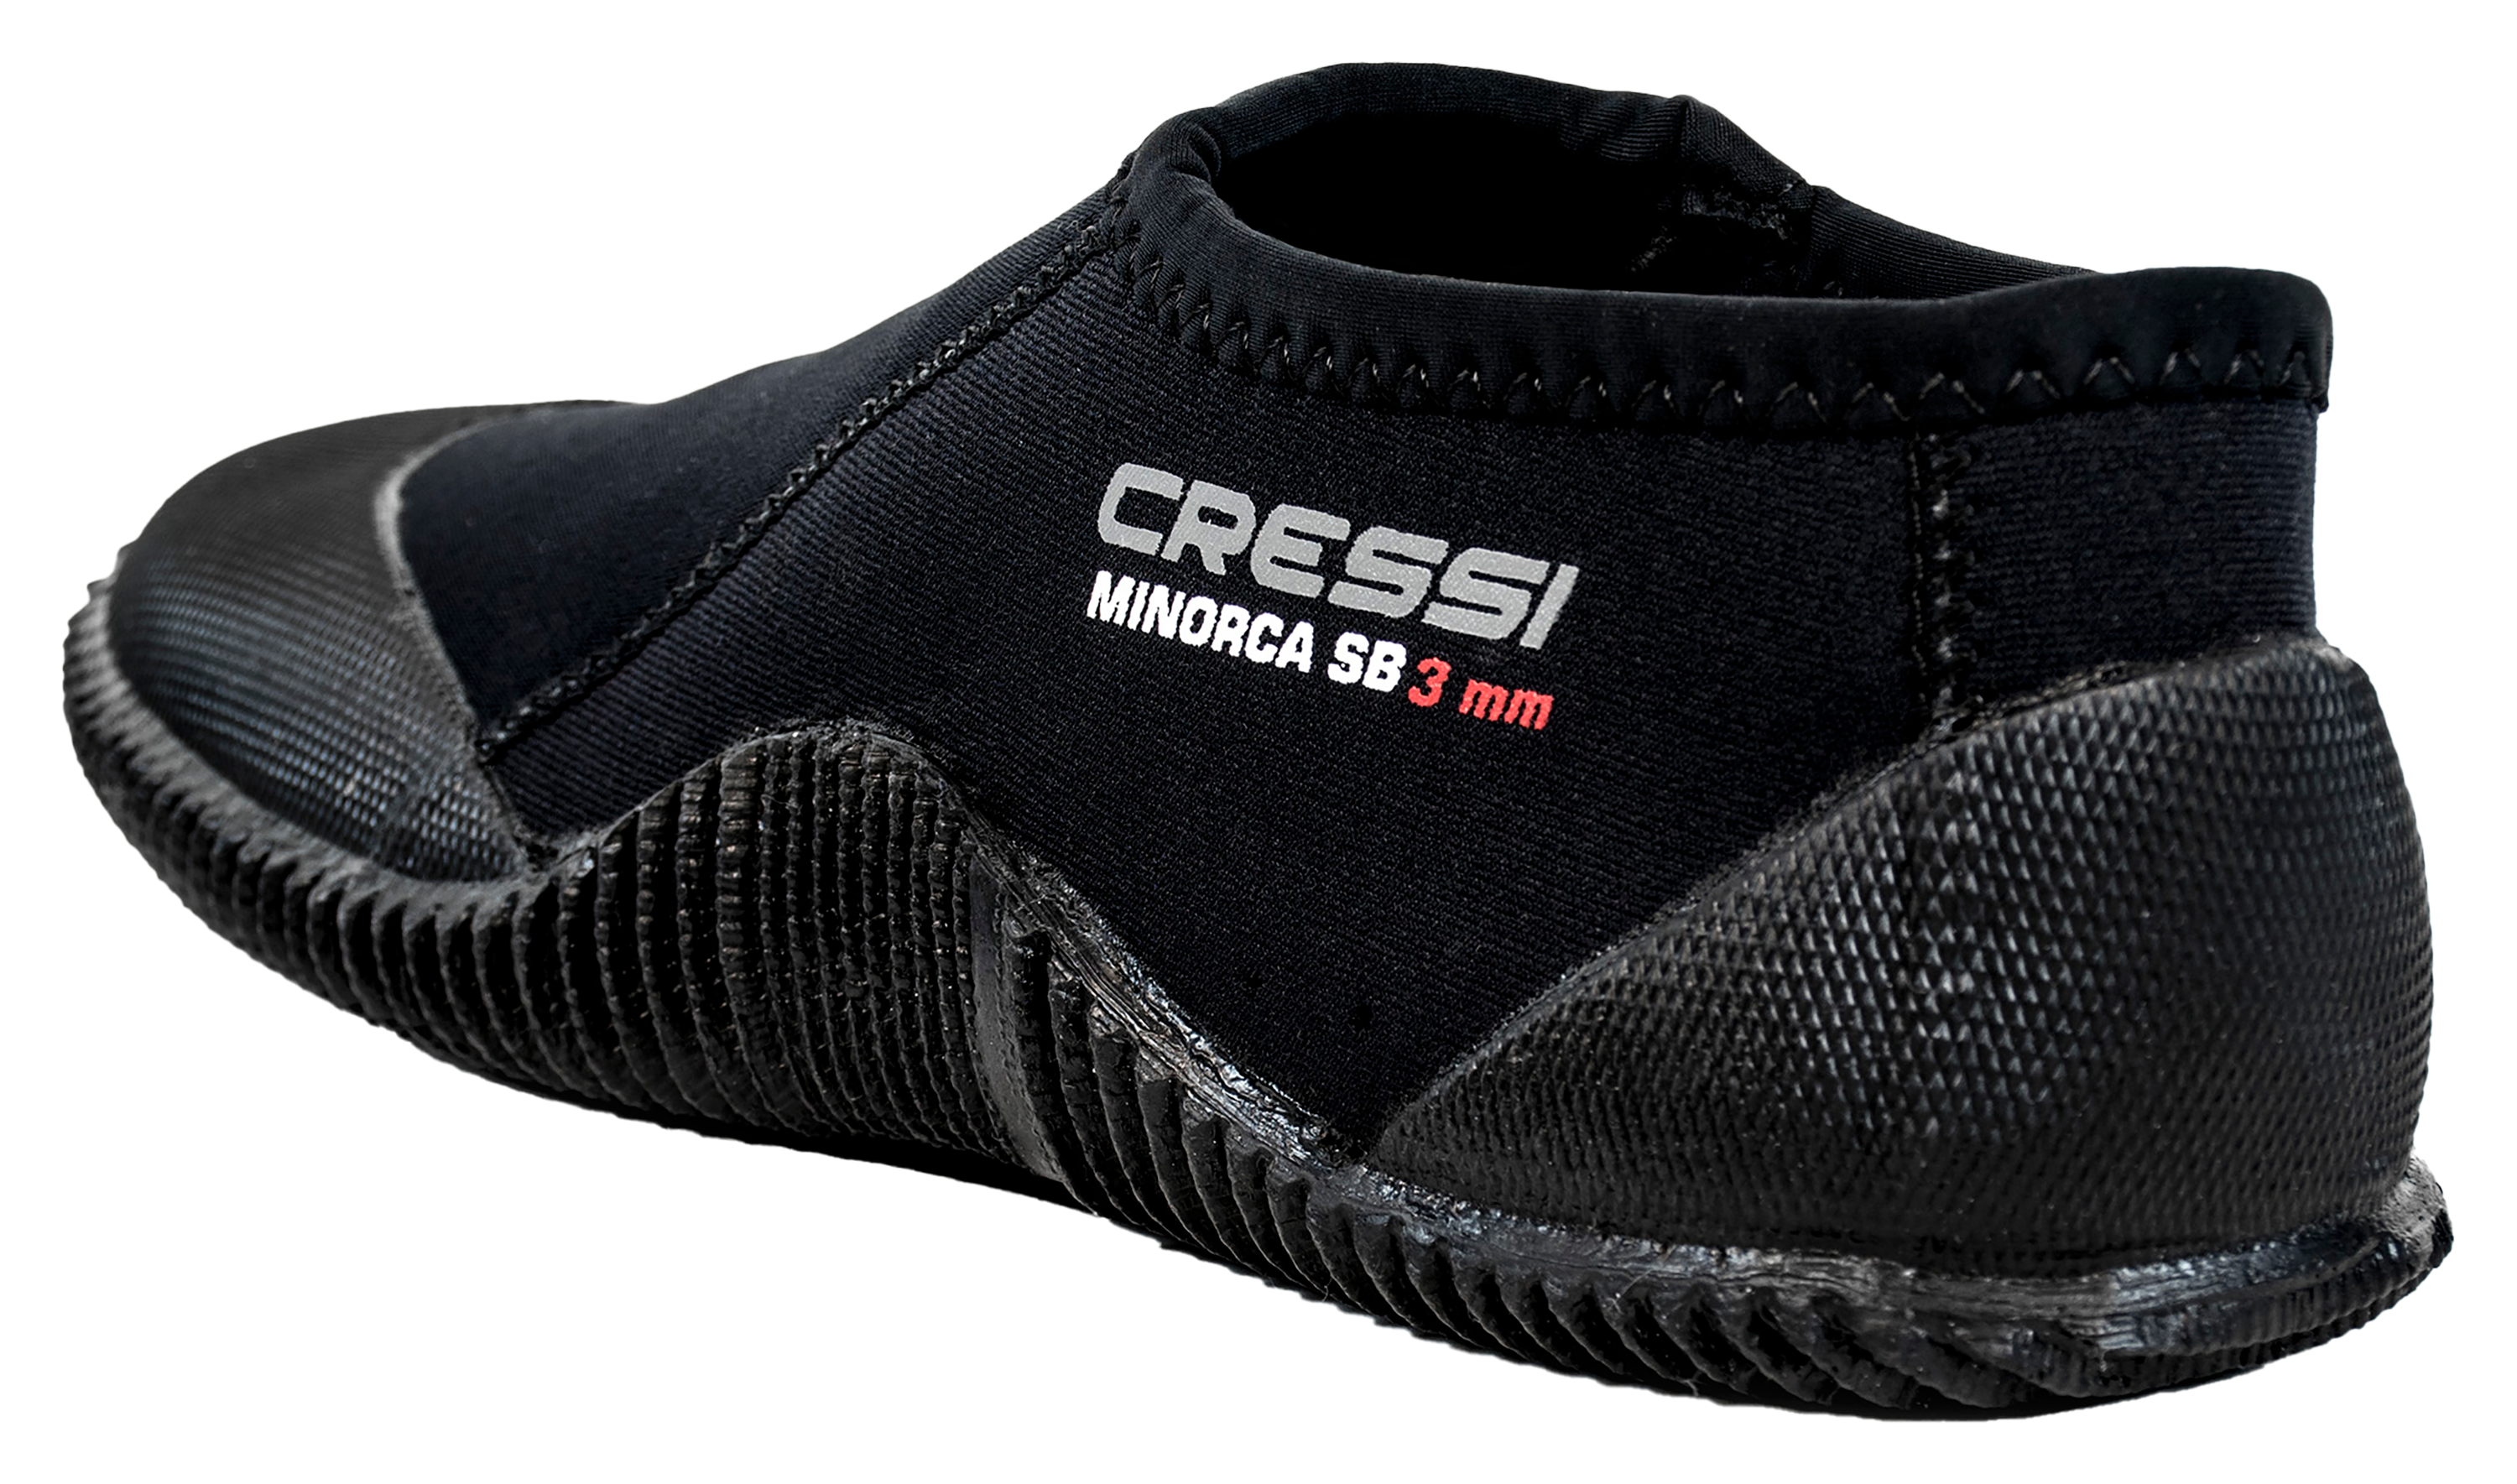 Cressi Minorca Short Boots for Men - Black - 10